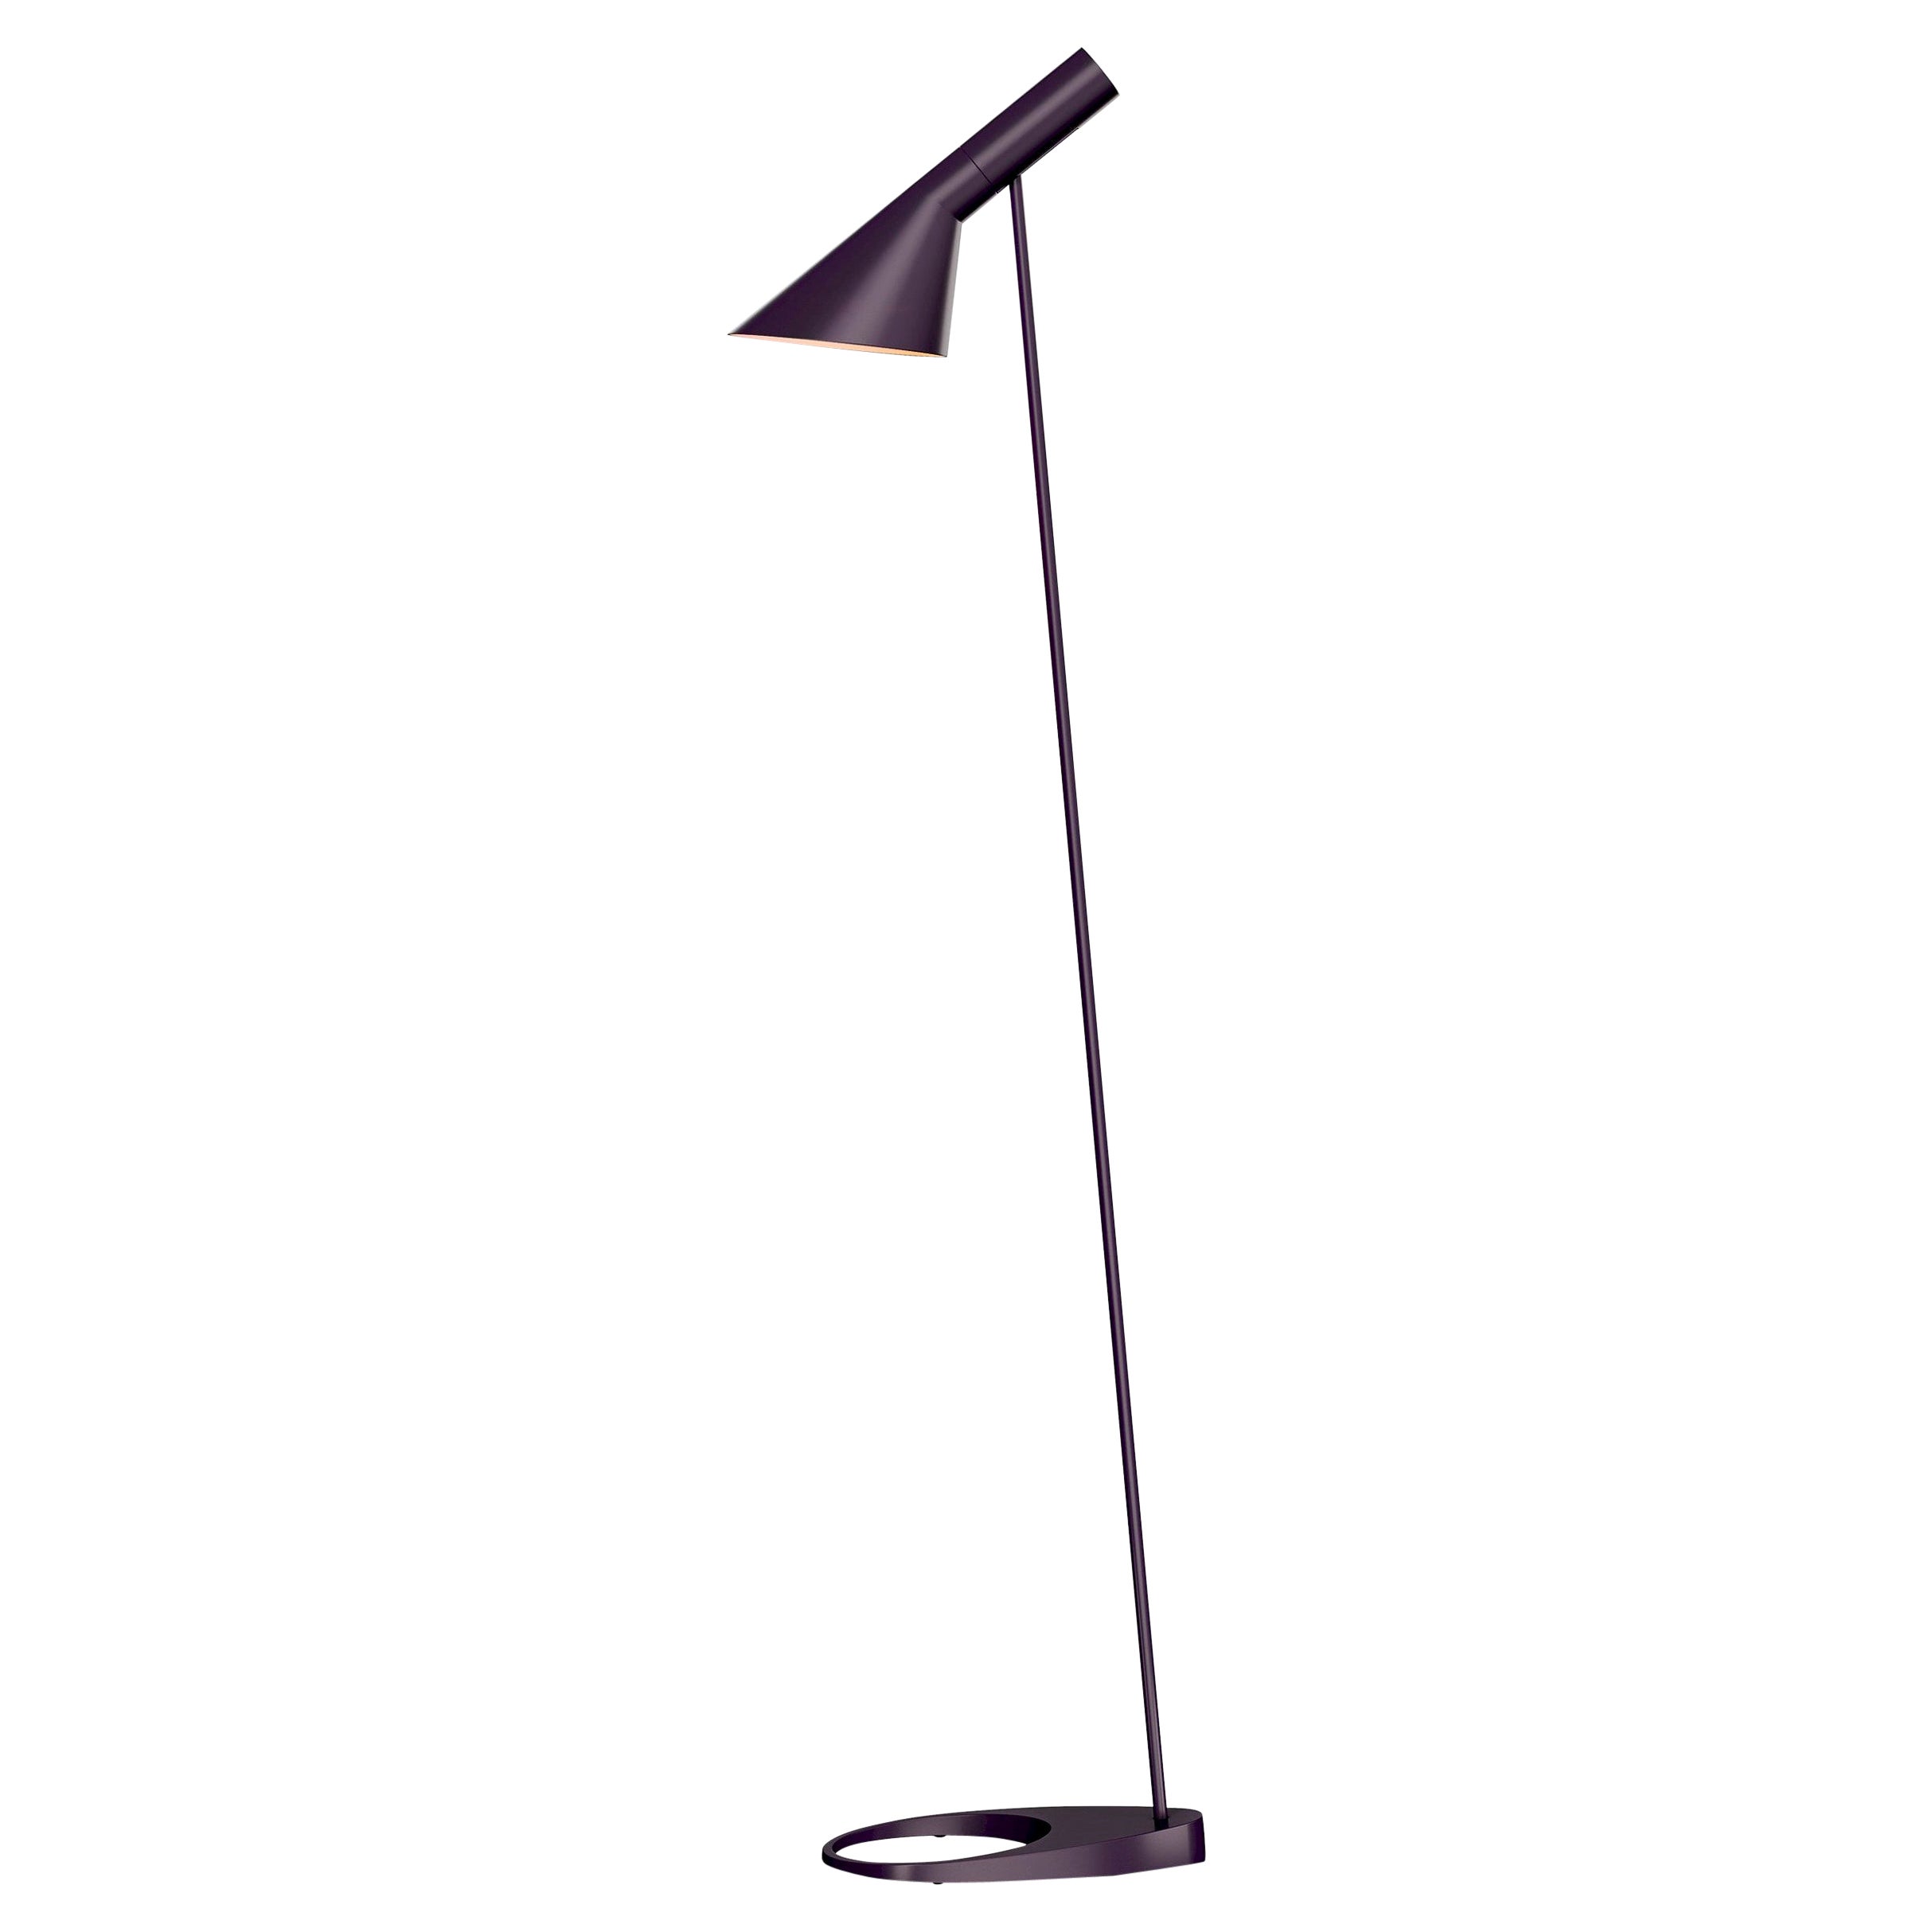 Arne Jacobsen AJ Floor Lamp in Aubergine for Louis Poulsen